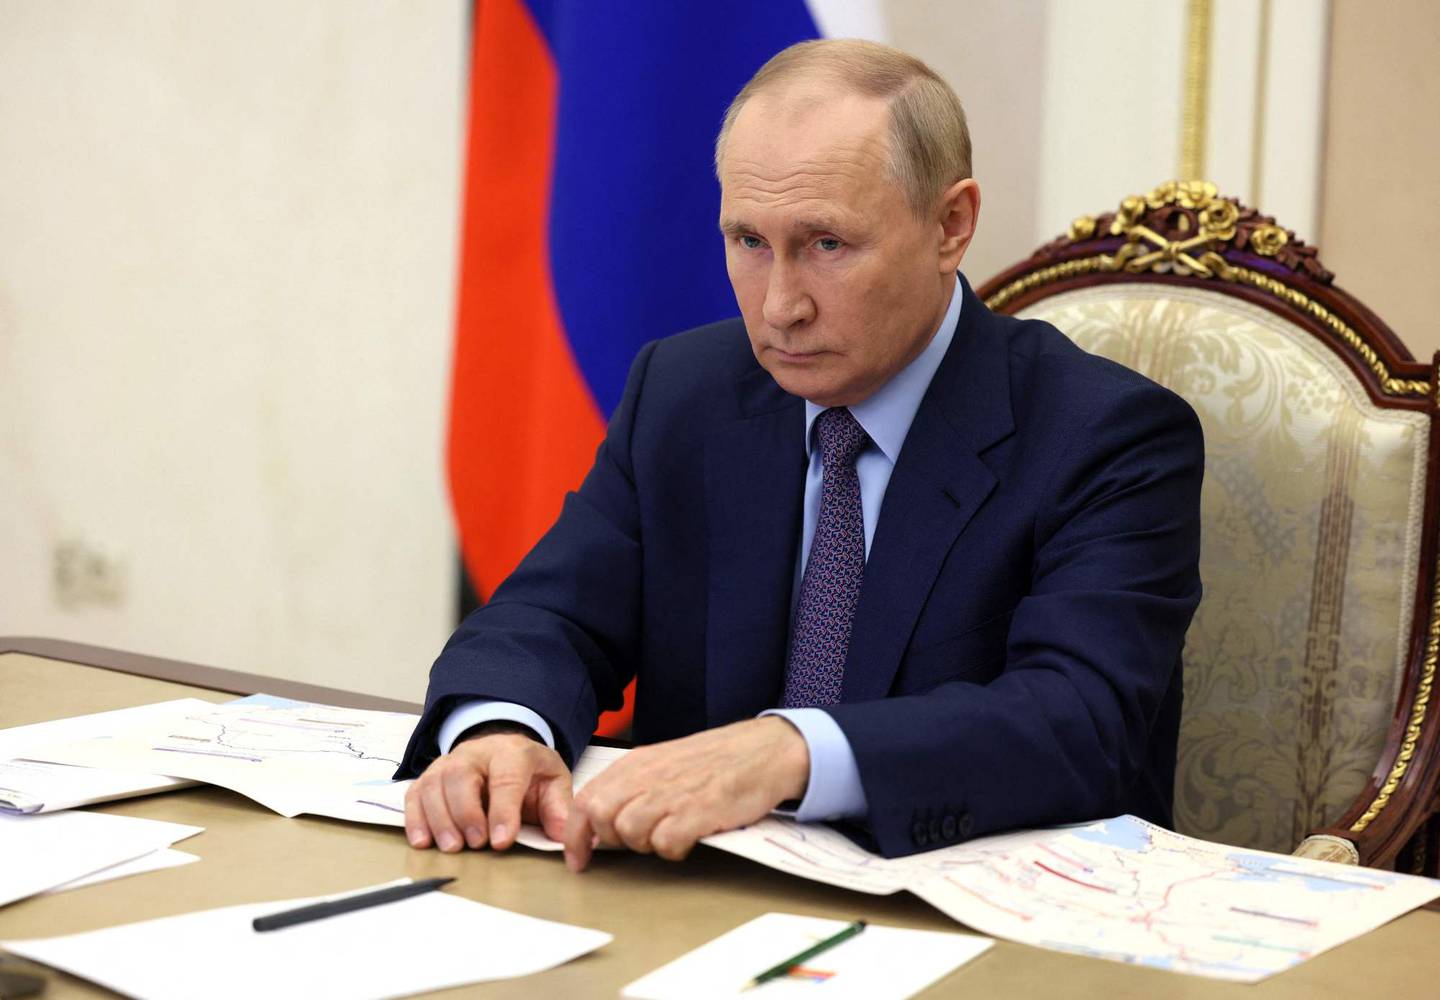 Det har kommet økt kritikk fra ulike hold mot Russlands president Vladimir Putin etter det militære tilbakeslaget i Ukraina. Her er Putin i en videokonferanse i Moskva 8. september.